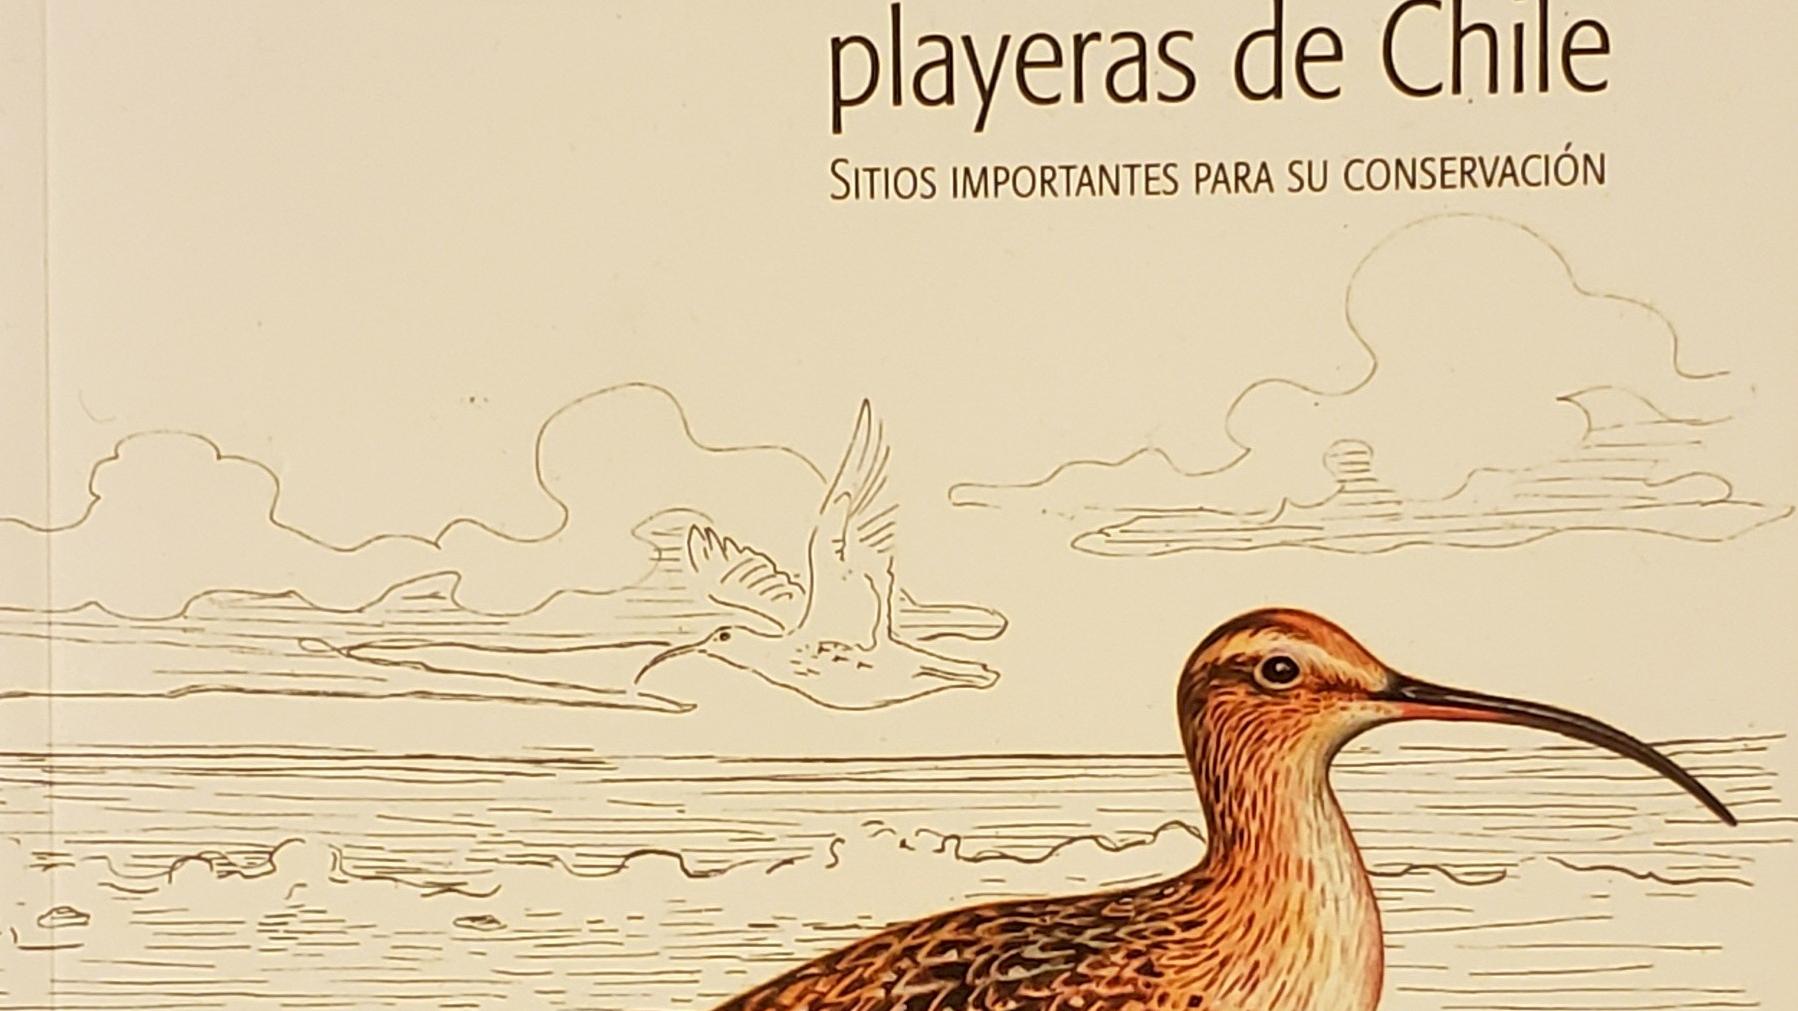 Atlas de las Aves Playeras de Chile: Sitios importantes para su conservación, de de Julián García Walther, Nathan Senner, Heraldo Norambuena y Fabrice Schmitt.